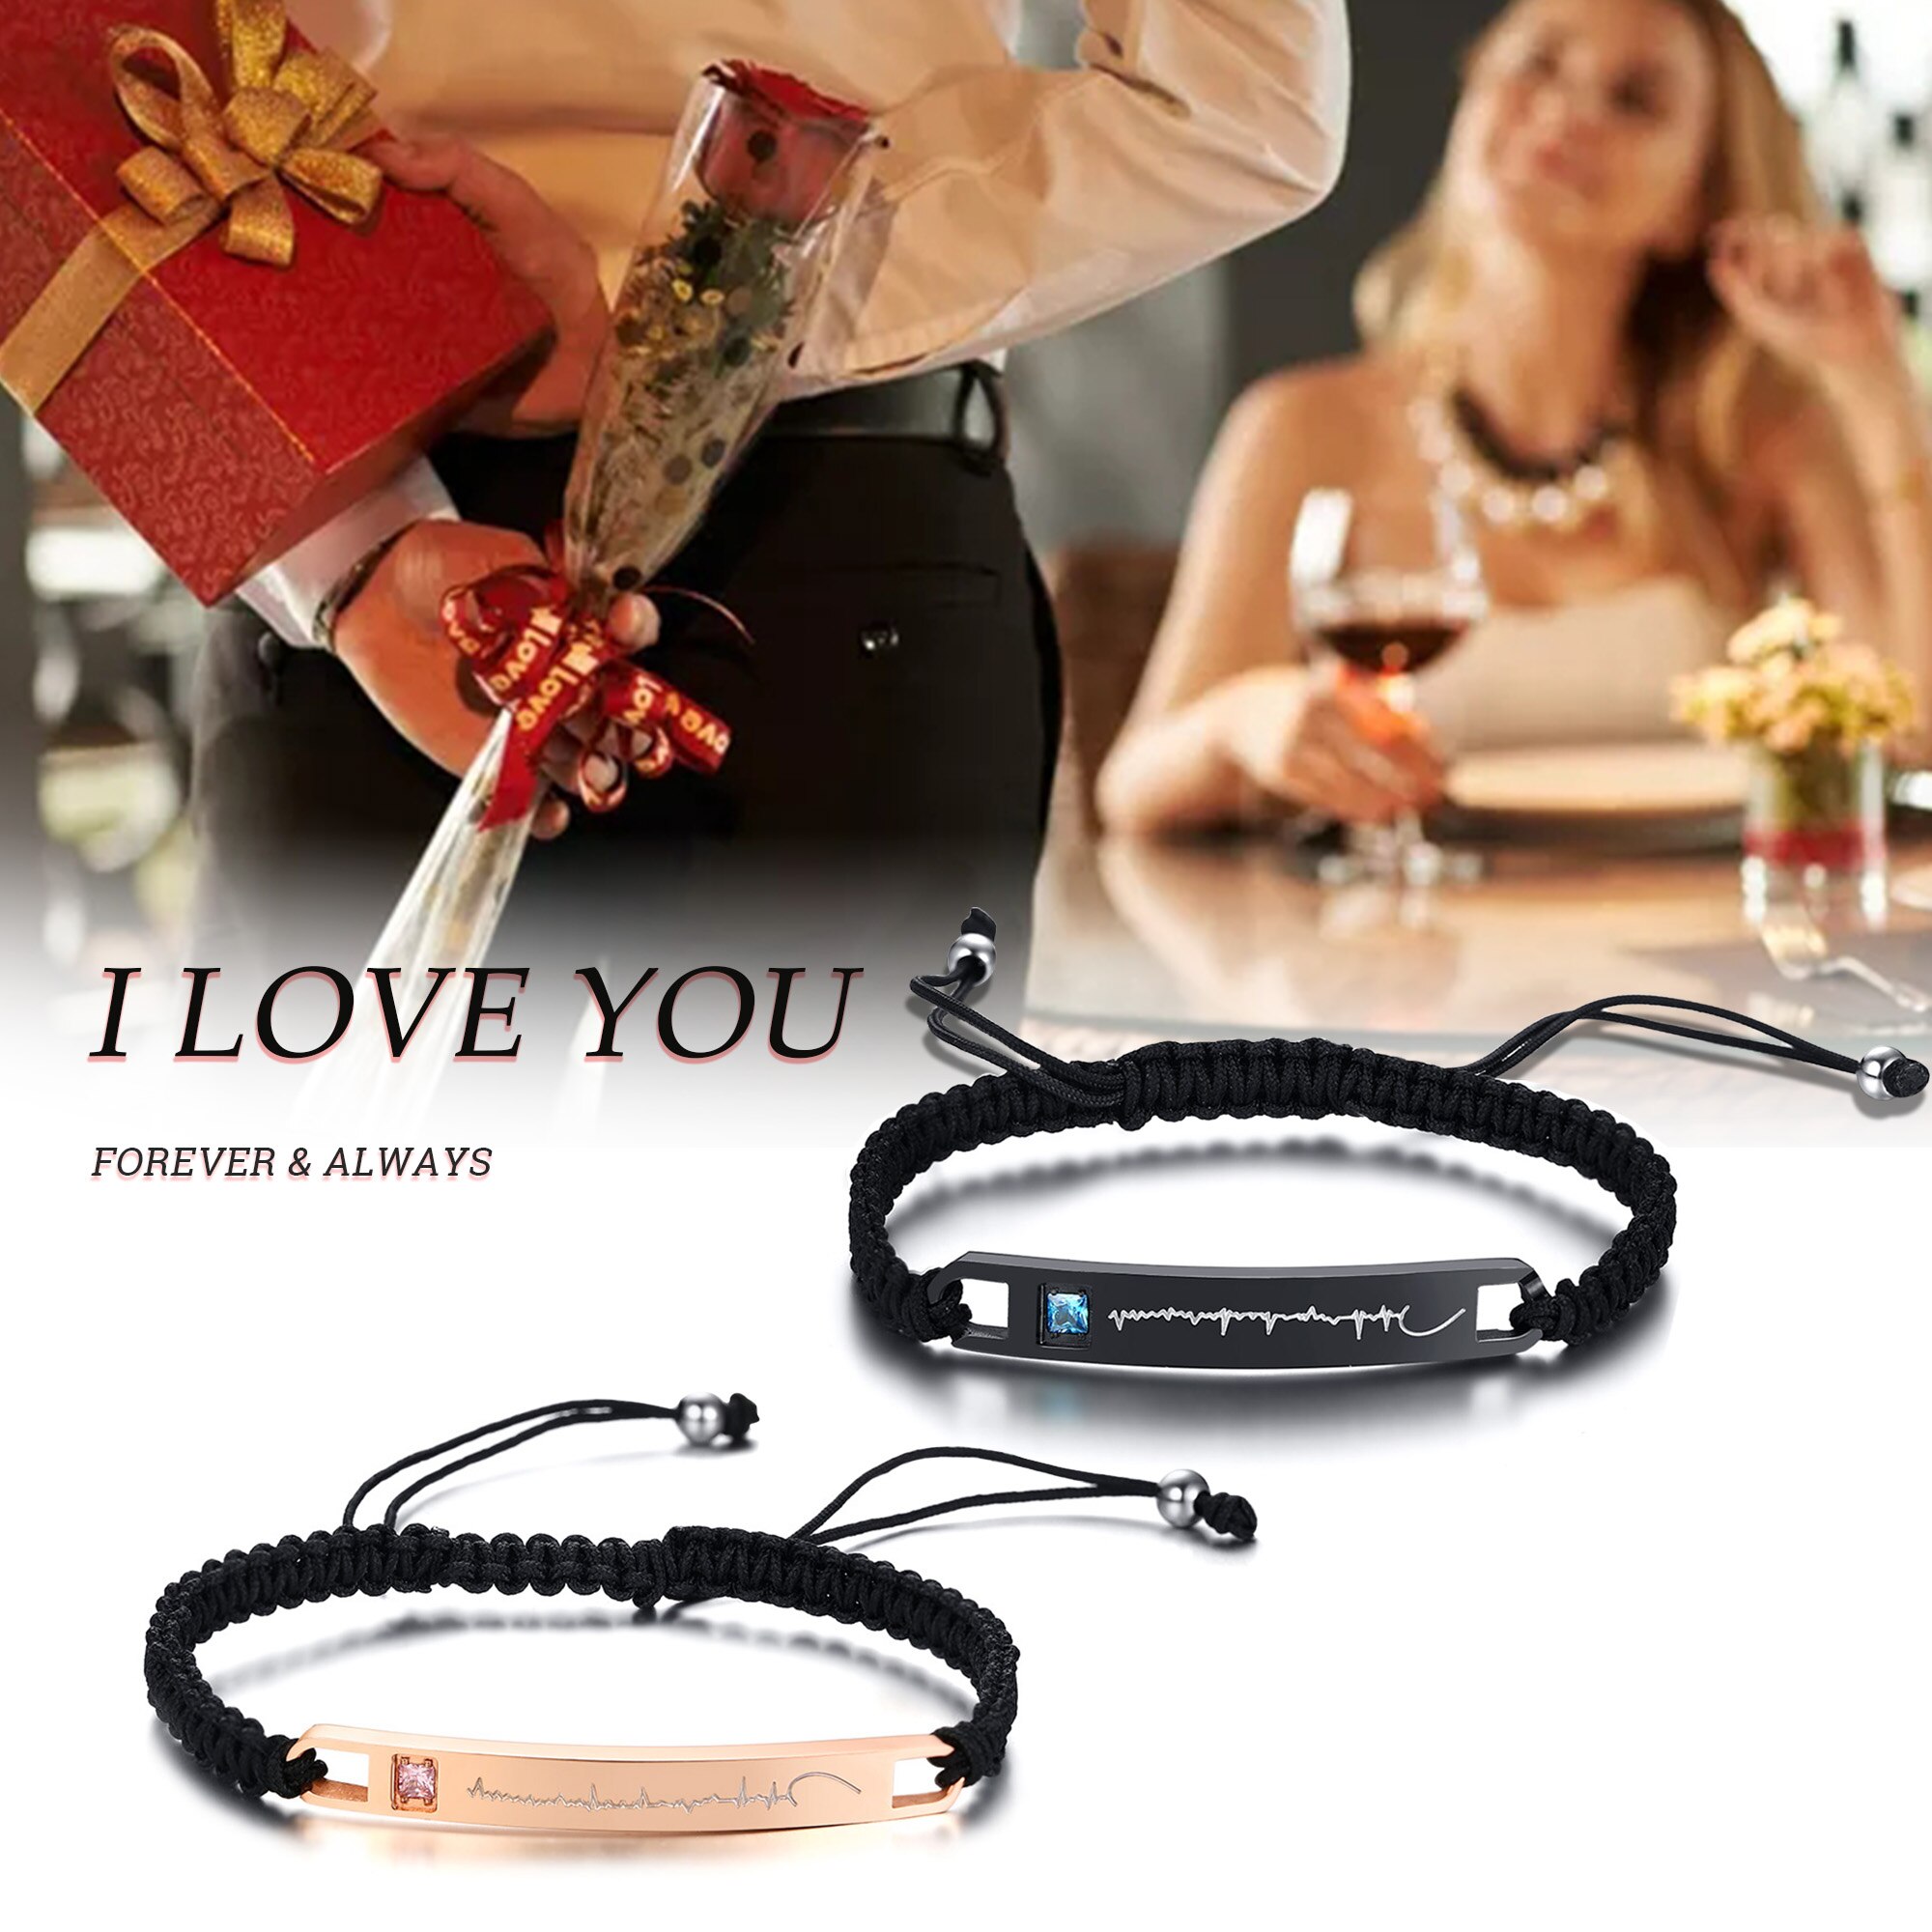 Romantische Liefde Hartslag Armbanden voor Vrouwen Man Hand-made Gevlochten Touw Paar Anniversary voor Hem Haar